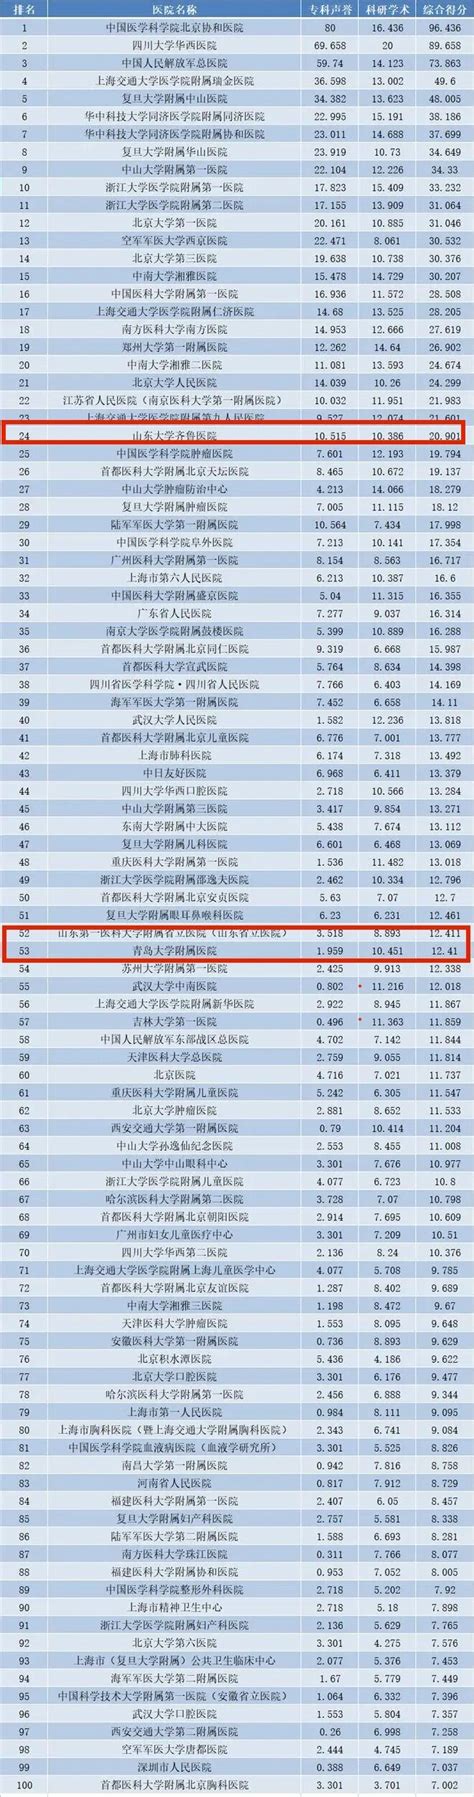 2021年度中国医院排行榜发布，山东这些医院上榜！ - 国内 - 潍坊新闻网